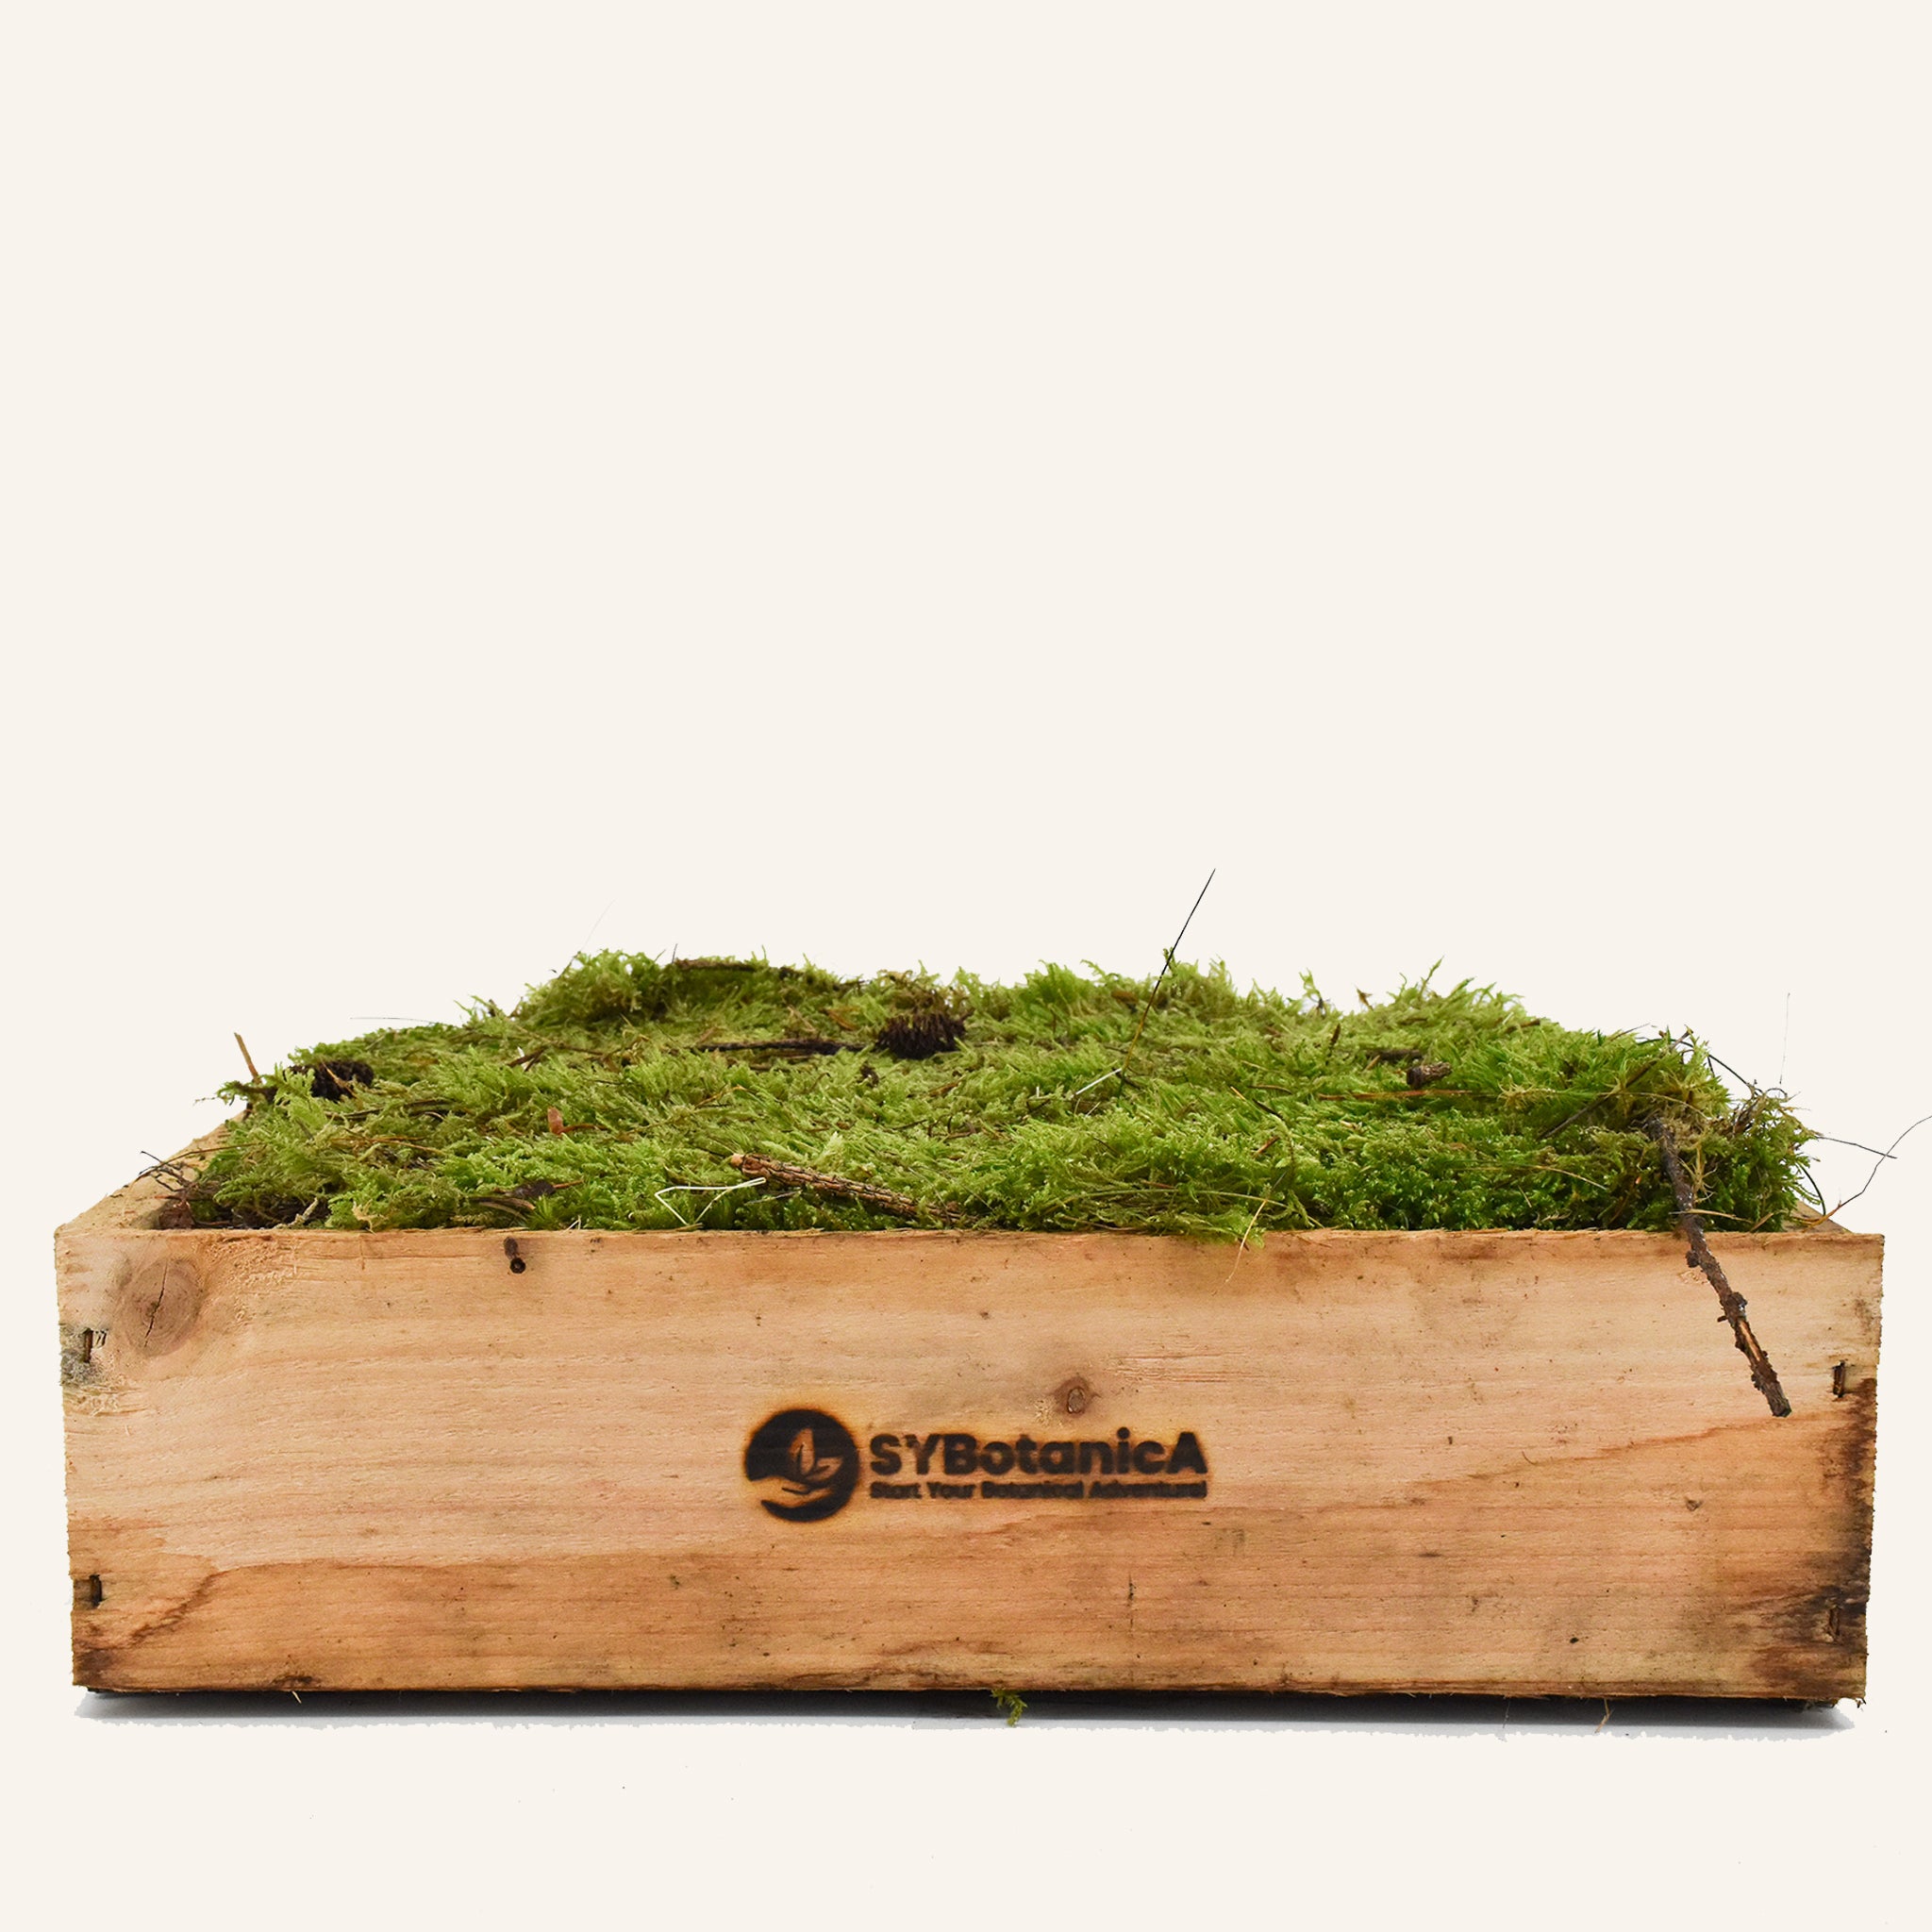 LIVE CARPET MOSS Natural Fresh Moss Terrarium Supplies Flat Moss